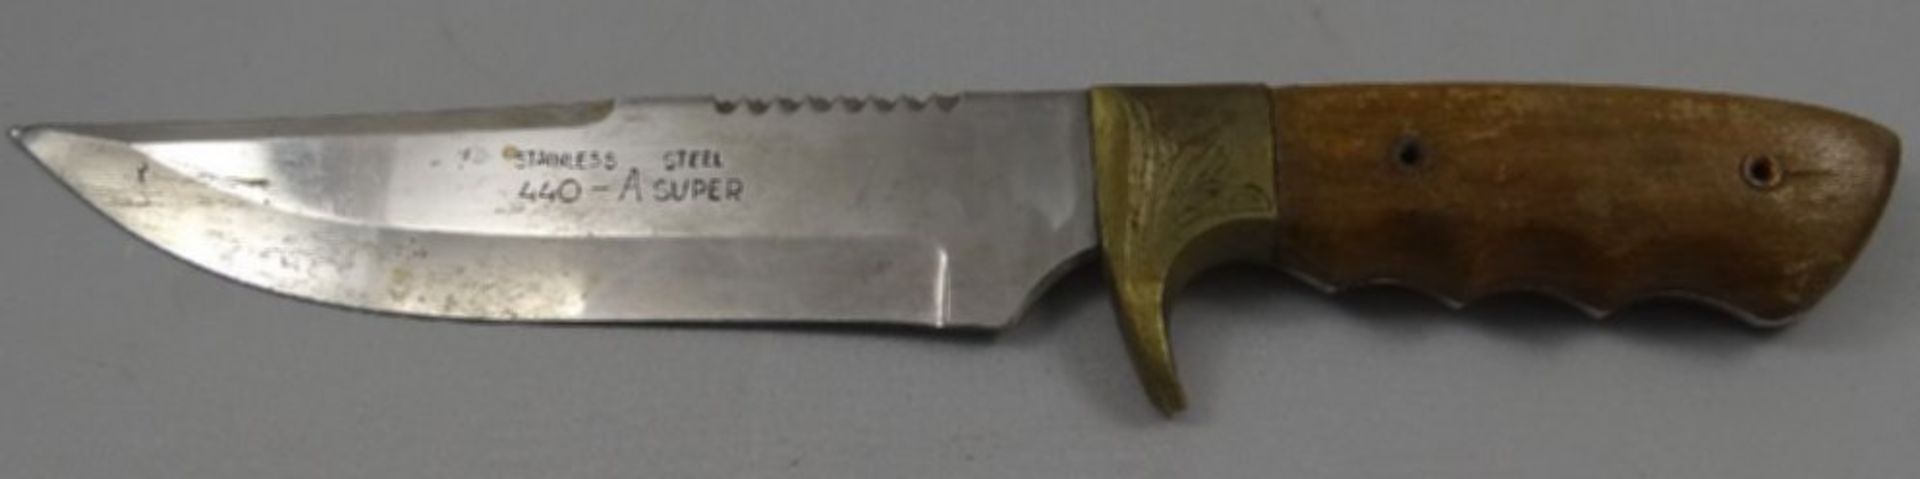 altes Jagdmesser "Aitor" Spain, Lederscheide, Holzgriff, Gebrauchsspuren, L-31,5 cm - Image 4 of 6